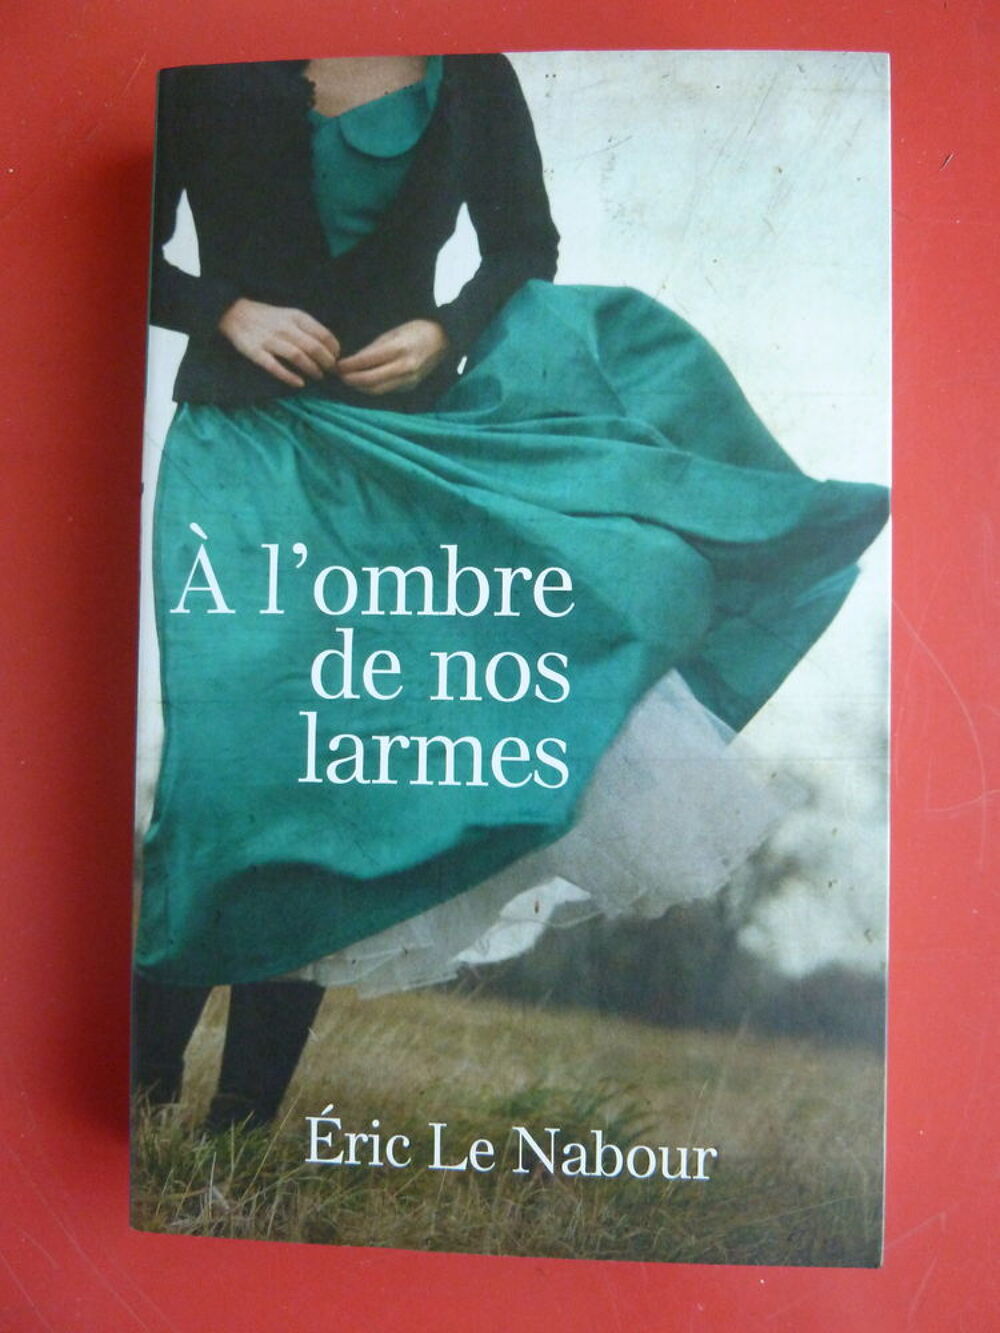 A l'ombre de nos larmes - Eric Le Nabour
Livres et BD